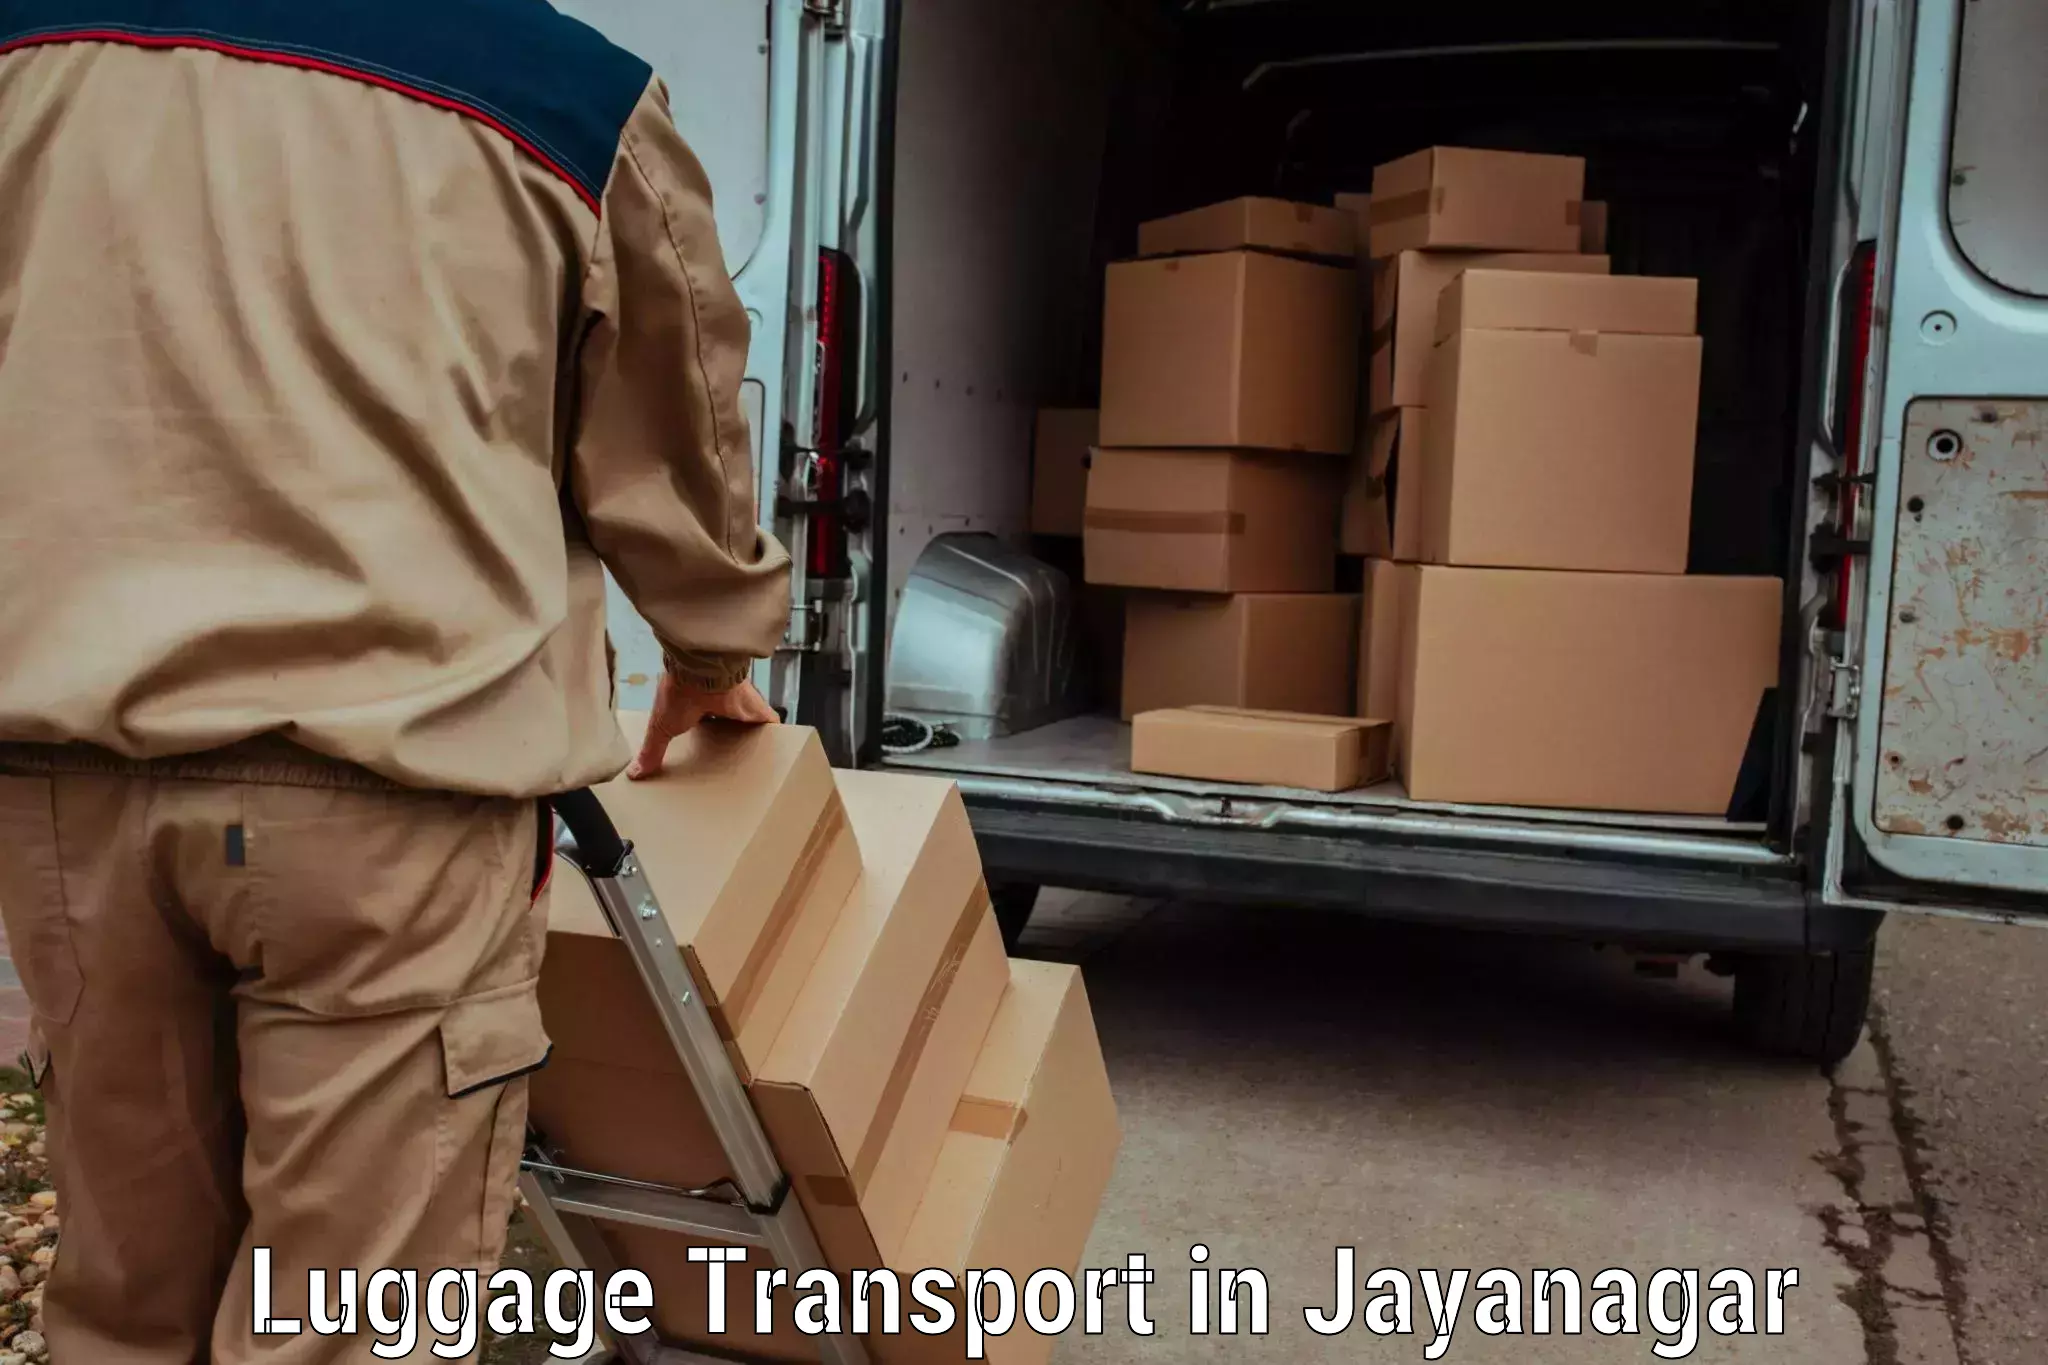 Luggage delivery estimate in Jayanagar